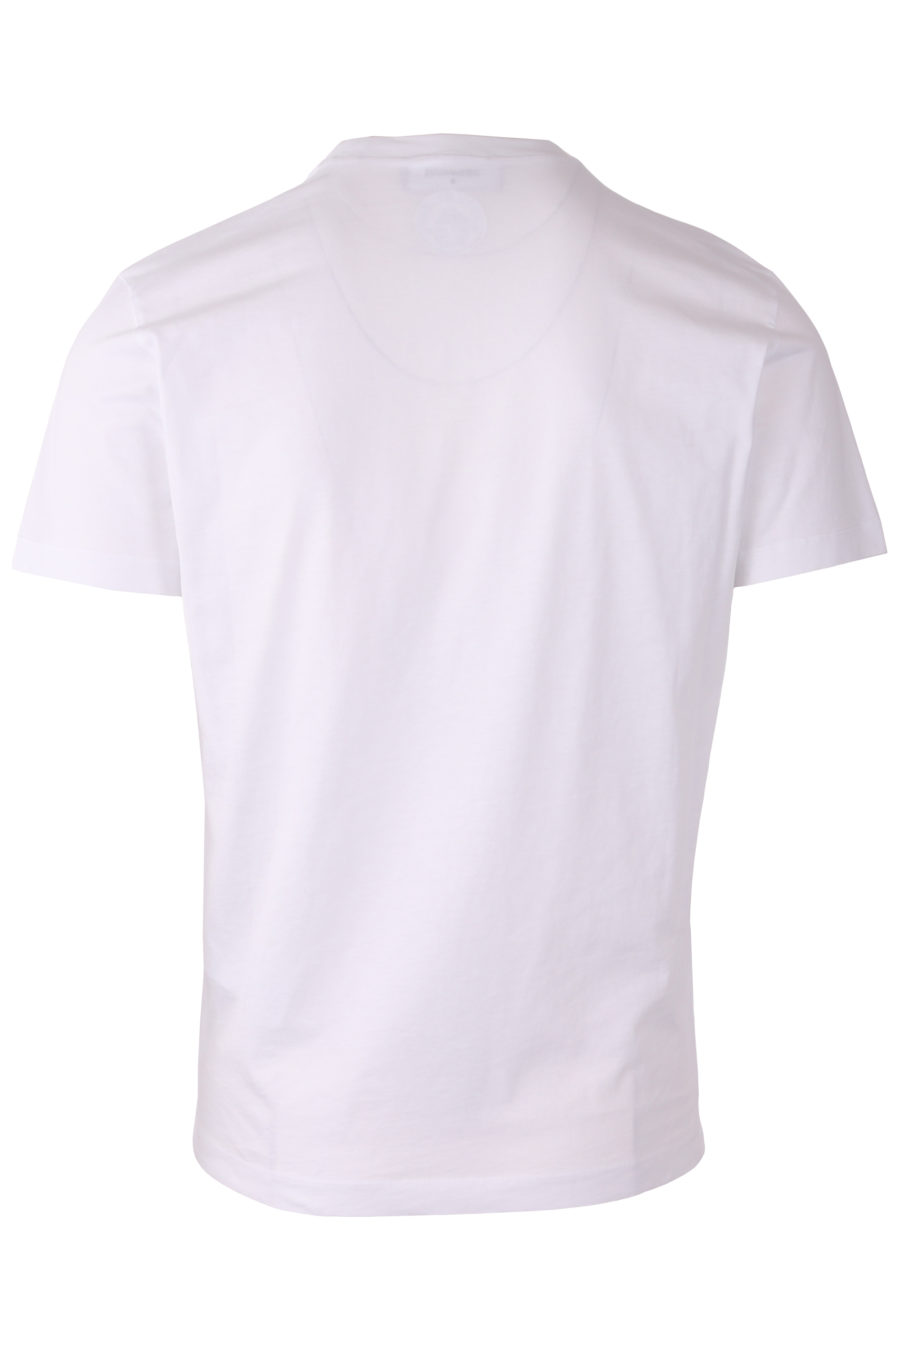 Camiseta blanca con logotipo "Icon" - a57c1773797052a42dcbc337356107830ed3d0e6